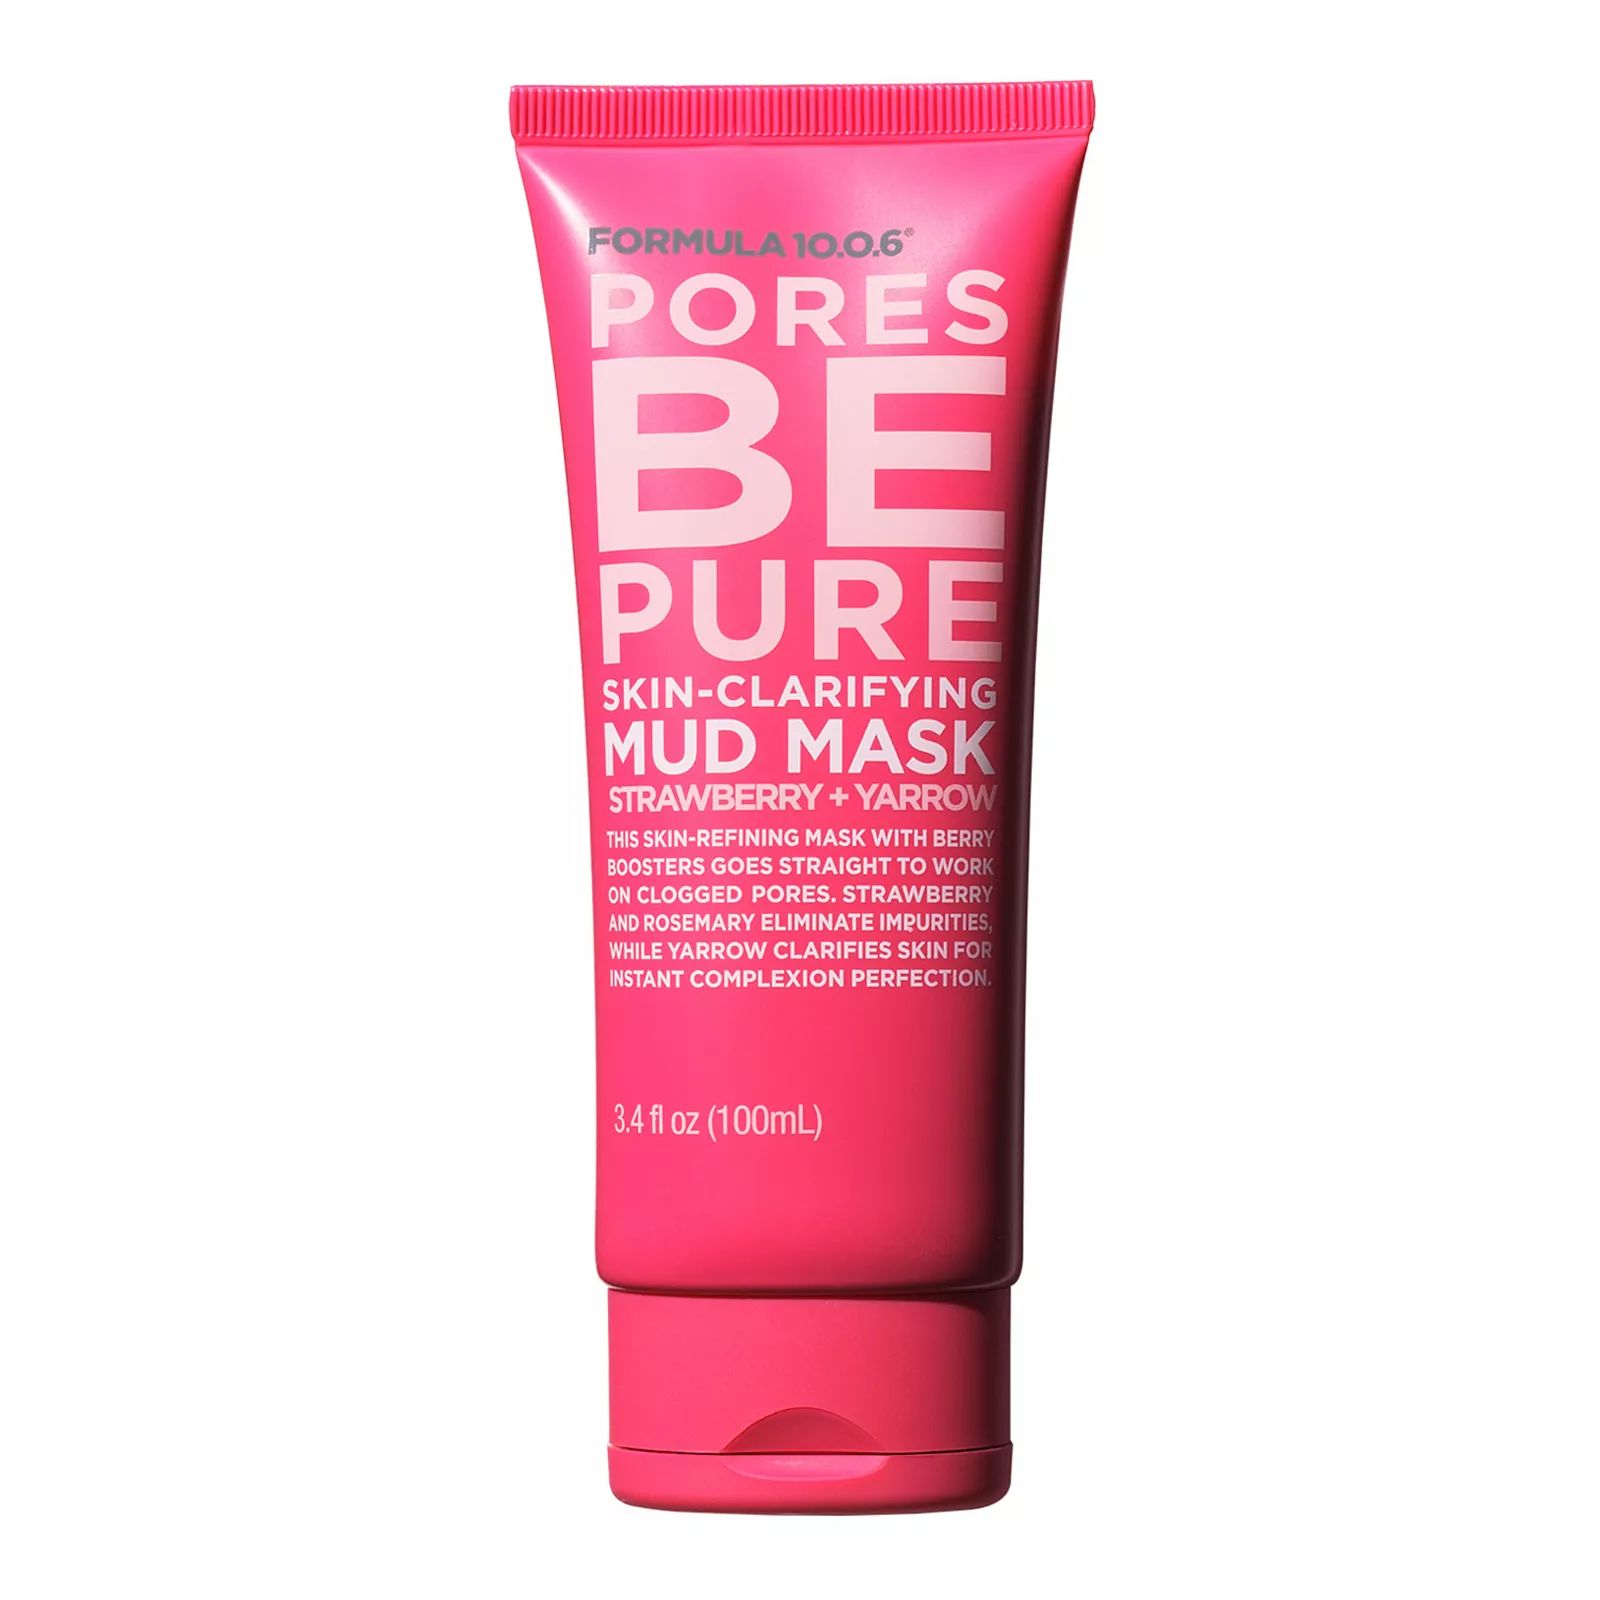 FORMULA 10.0.6. Pores Be Pure Strawberry + Yarrow Skin-Clarifying Mud Mask | Kohl's